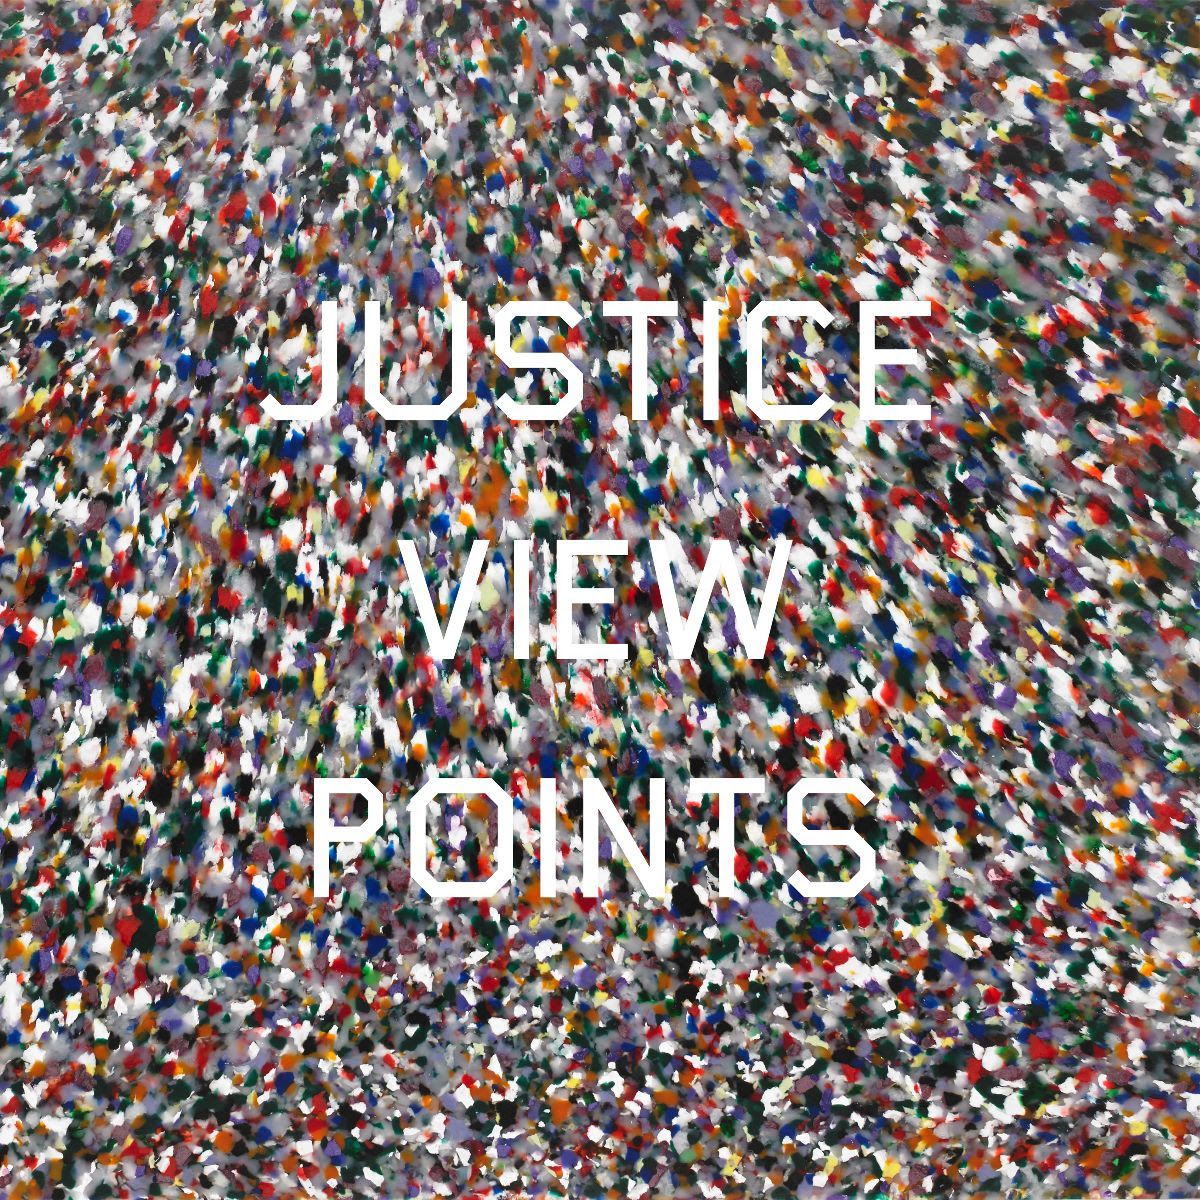 ALBUM ANNOUNCEMENT//Justice – Viewpoints